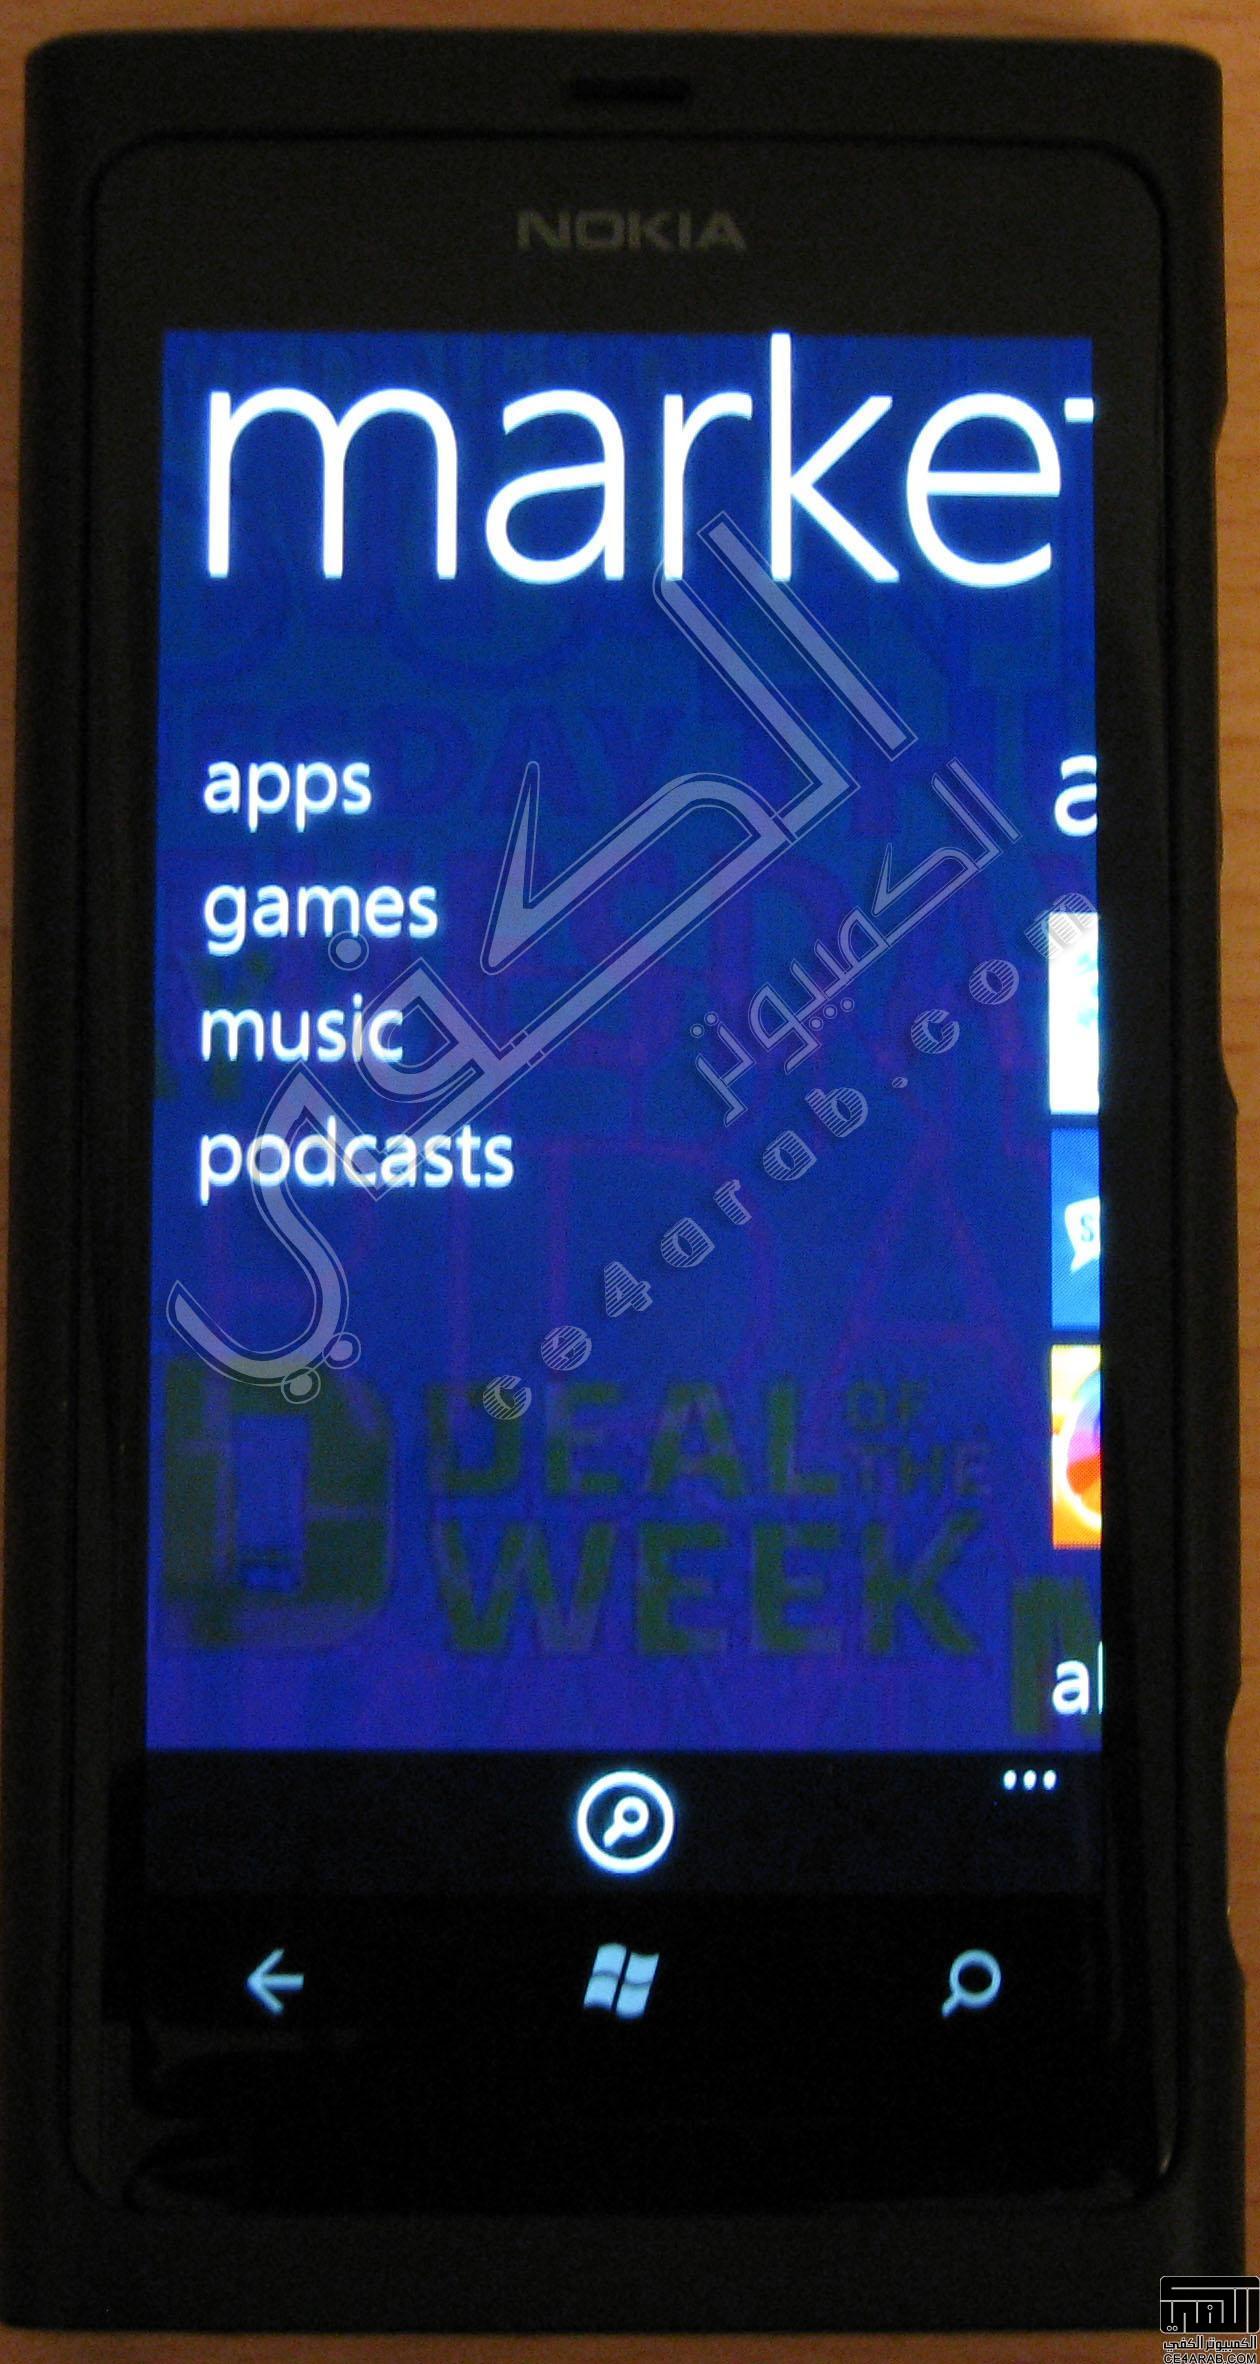 تجربتي الشخصية مع هاتف Nokia Lumia 800 الجزء الثاني